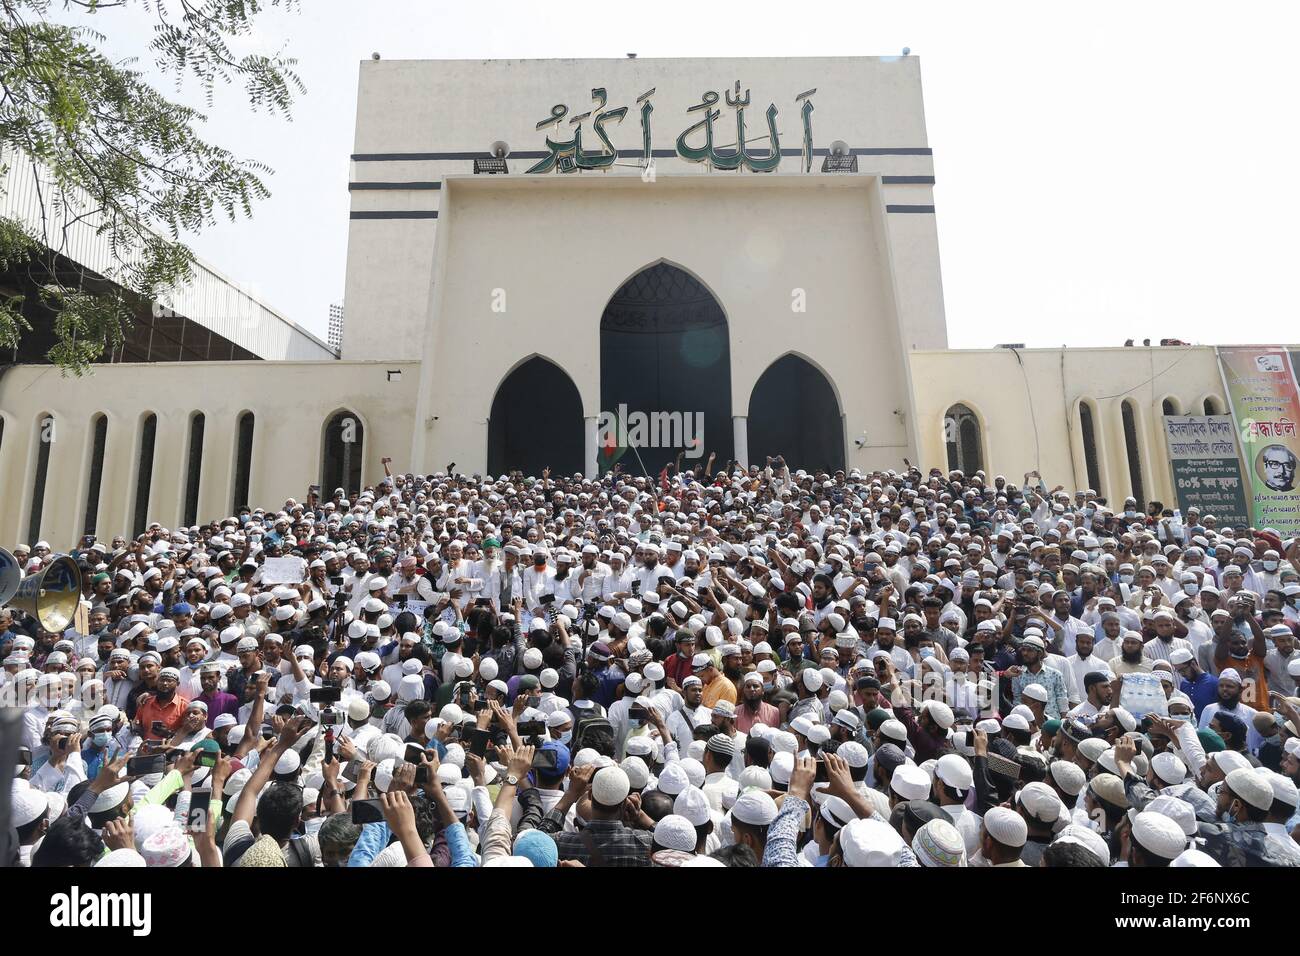 Hefajat-e-Islam realizó una manifestación frente a la Mezquita Nacional Baitul Mukarram en protesta por la muerte de sus activistas durante enfrentamientos con los encargados de hacer cumplir la ley durante tres días, en Dhaka, Bangladesh, 2 de abril de 2021. Foto de Kanti Das Suvra/ABACAPRESS.COM Foto de stock